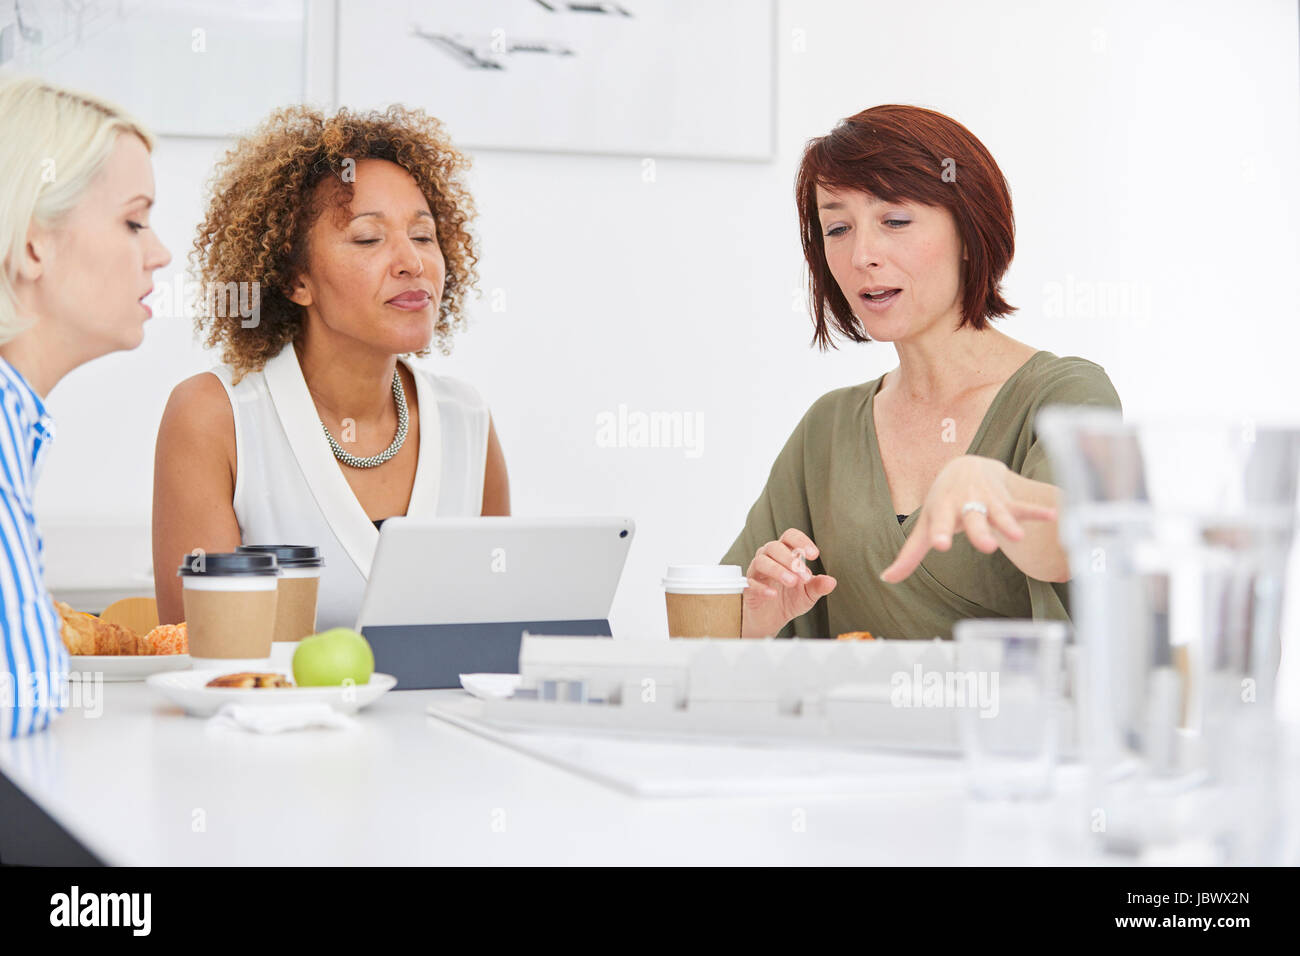 Modèle d'architecture architecte femelle expliquant sur table en réunion d'équipe Banque D'Images